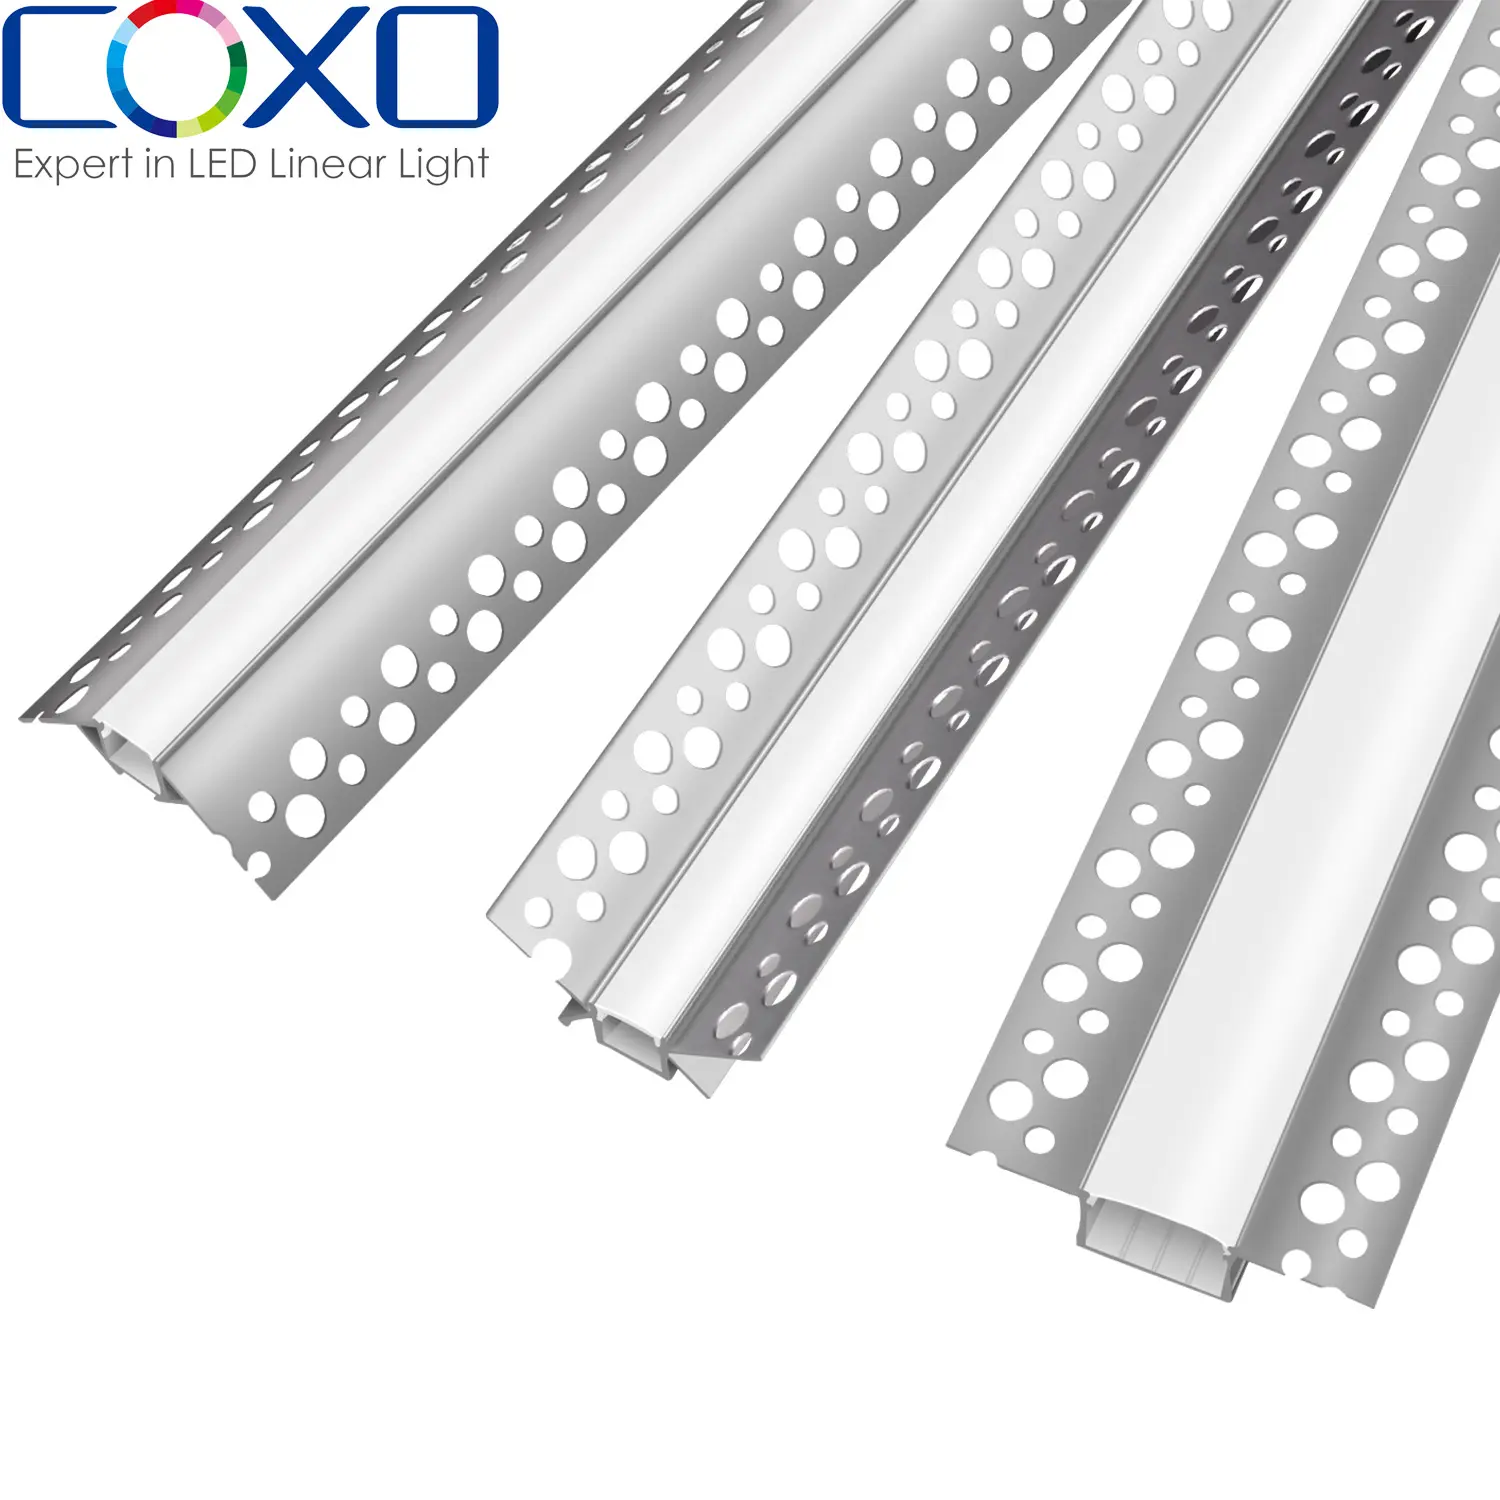 Canal de profil en aluminium led de haute qualité pour bande lumineuse cloison sèche canal de profil en aluminium led